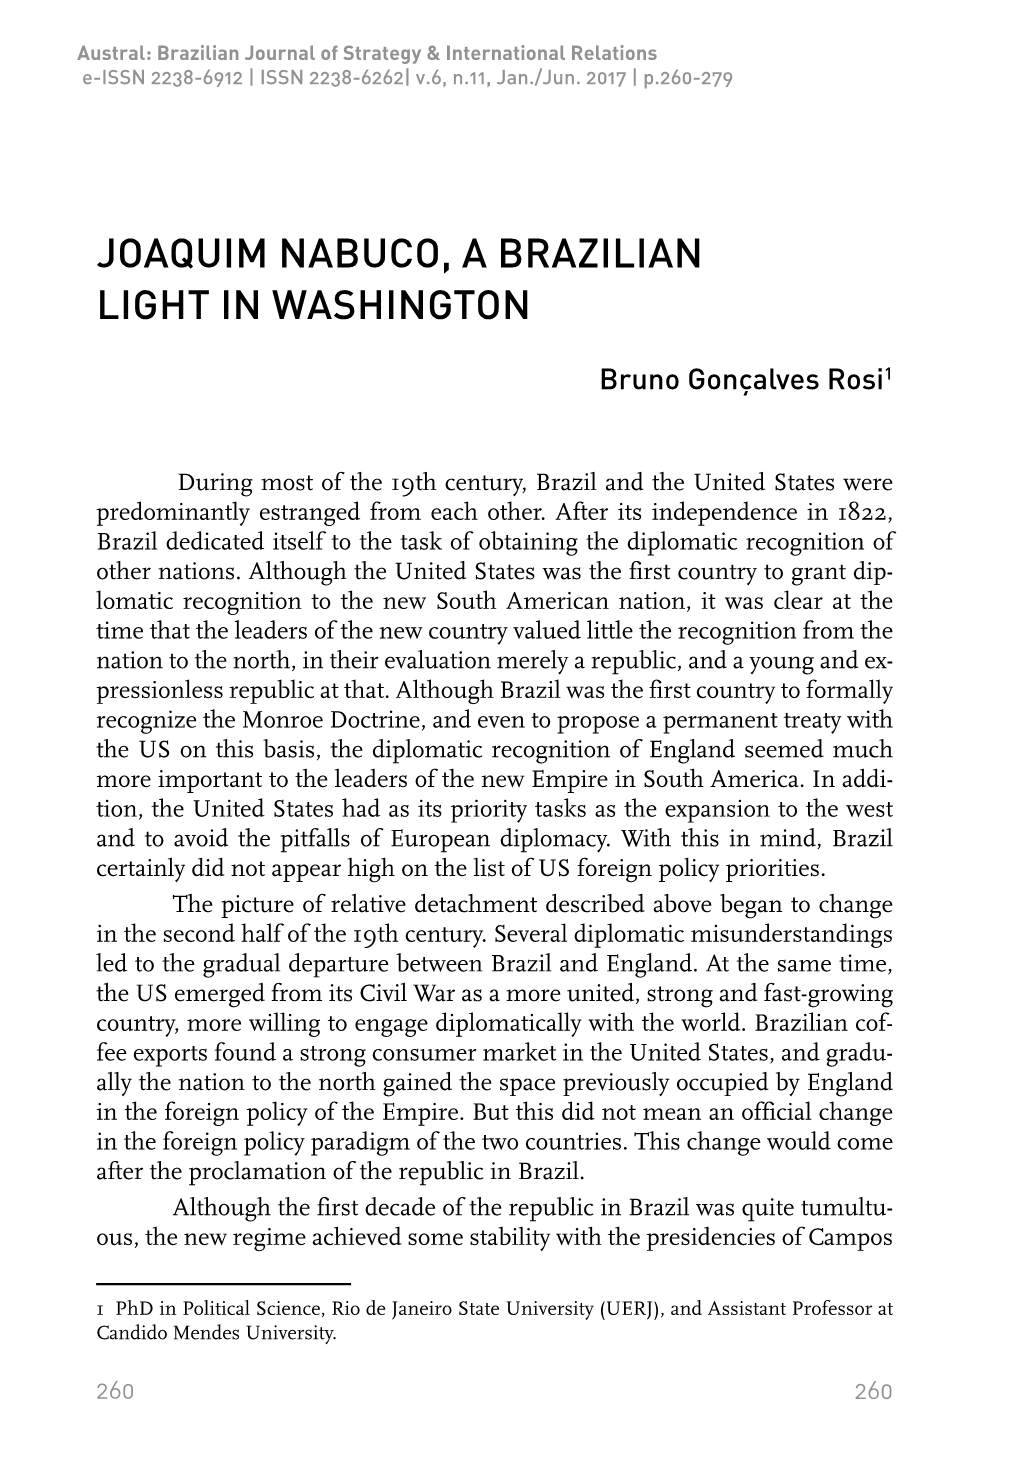 Joaquim Nabuco, a Brazilian Light in Washington